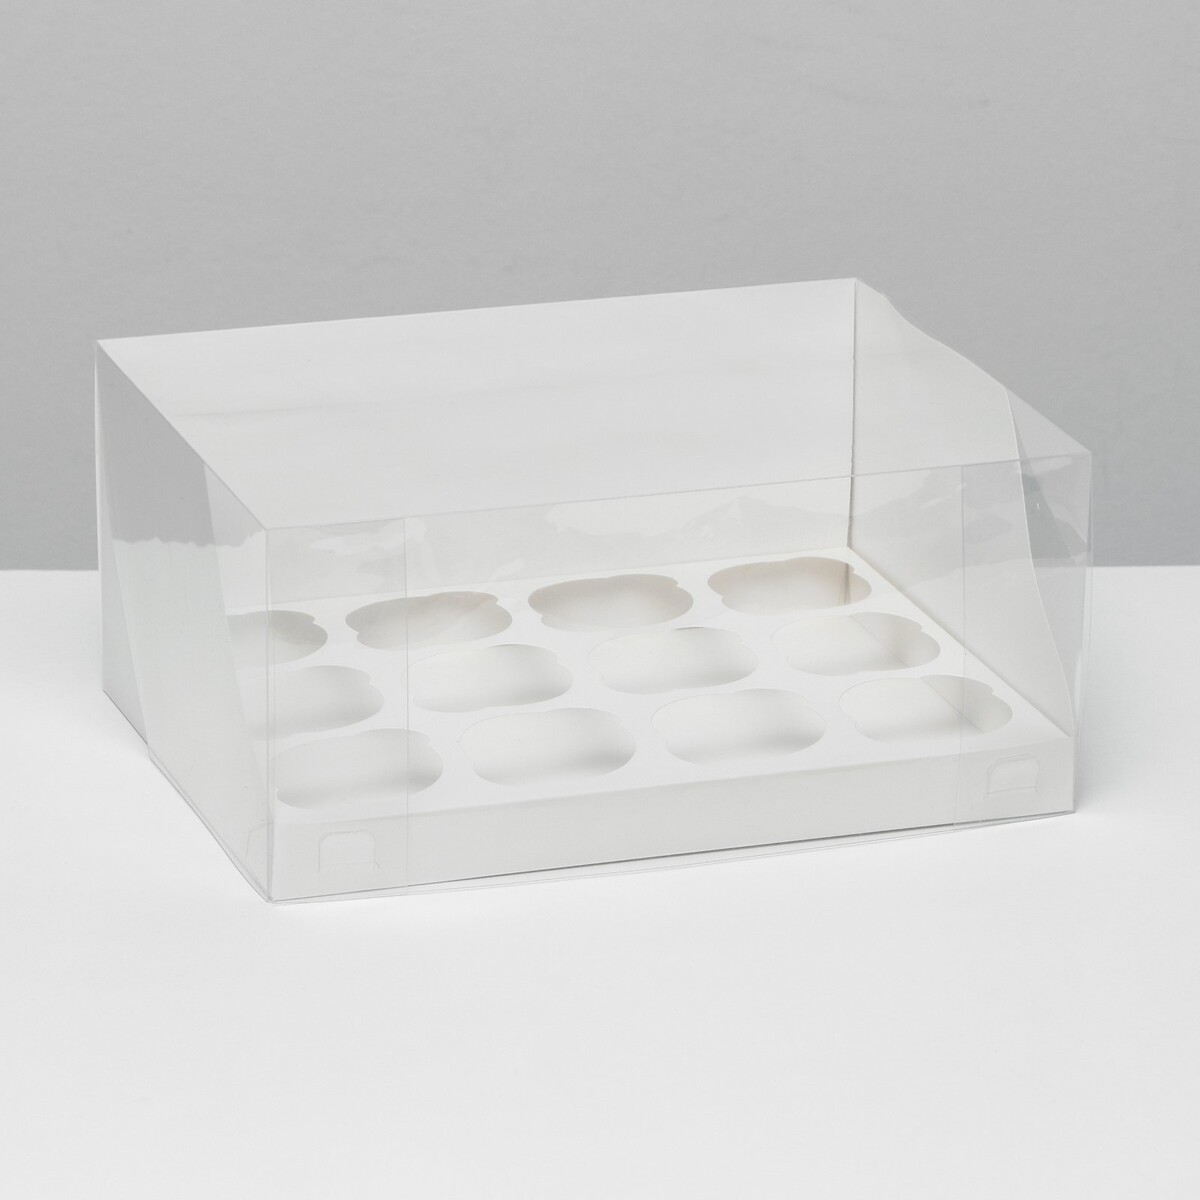 Кондитерская складная коробка для 12 капкейков белая, 31 x 24 x 14 см кондитерская складная коробка для 6 капкейков 23 5 х 16 х 10 голубая